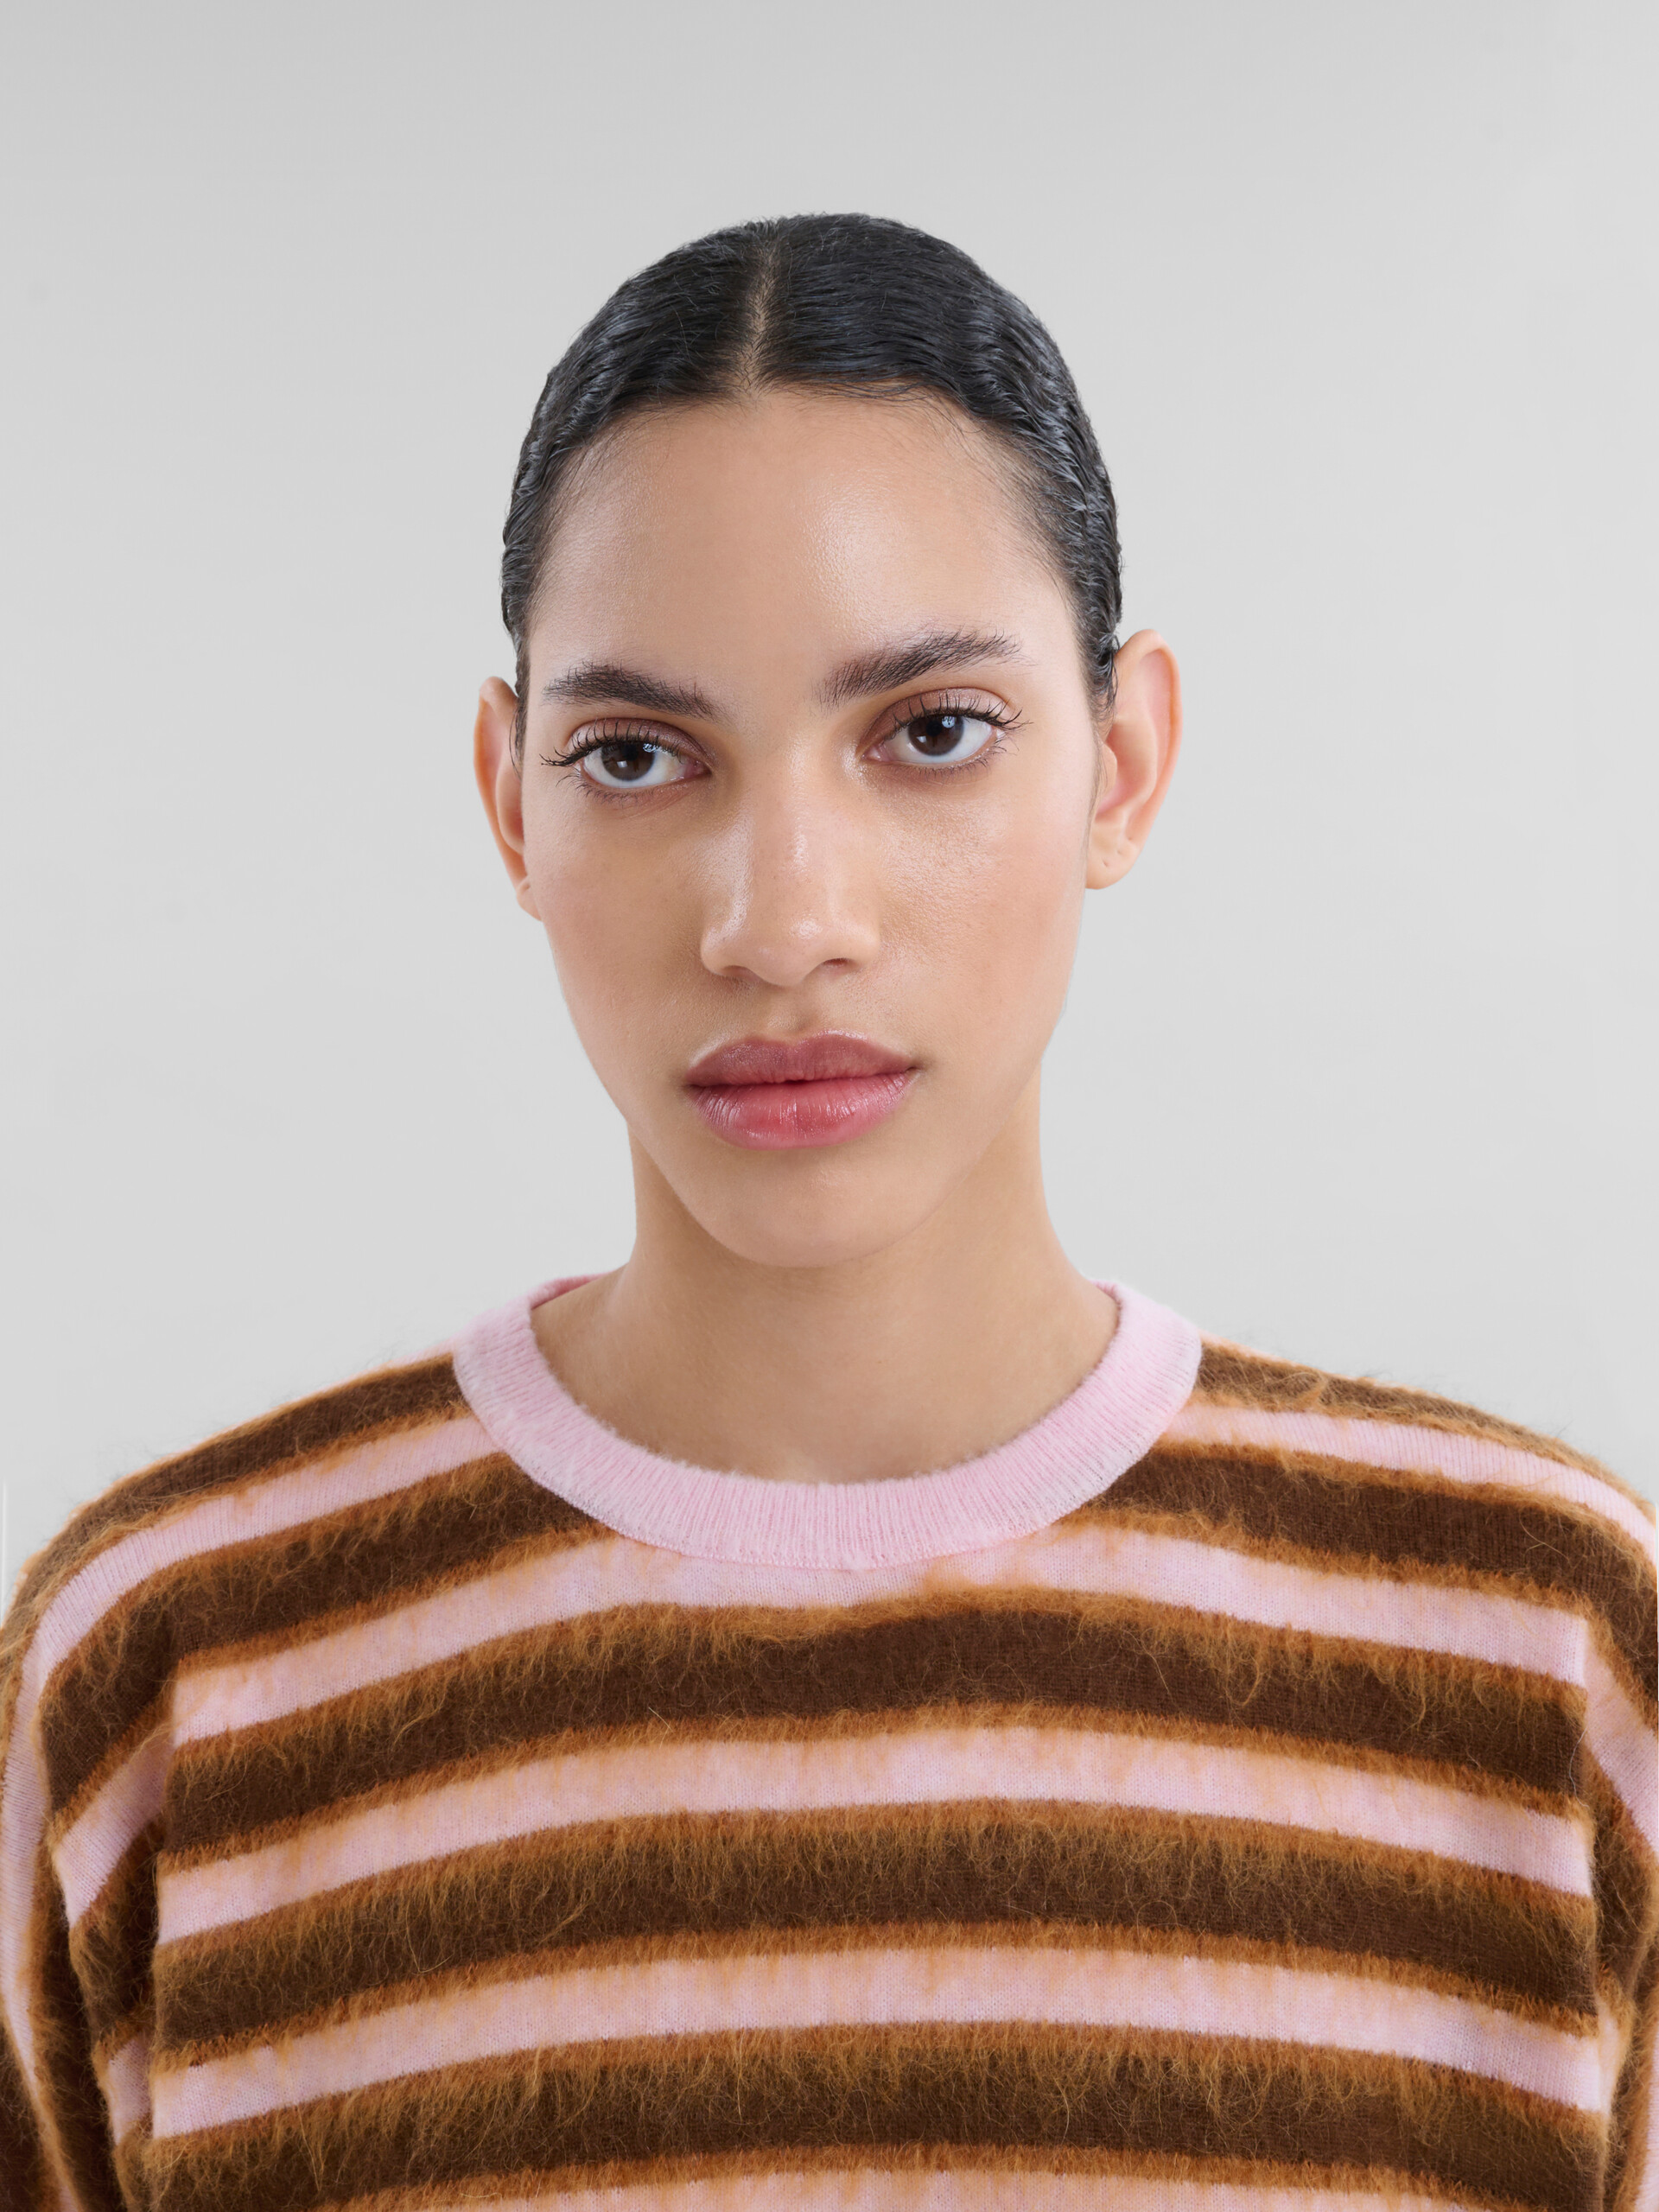 Rosafarben gestreifter Pullover mit halblangen Ärmeln aus Wolle und Mohair - Pullover - Image 4